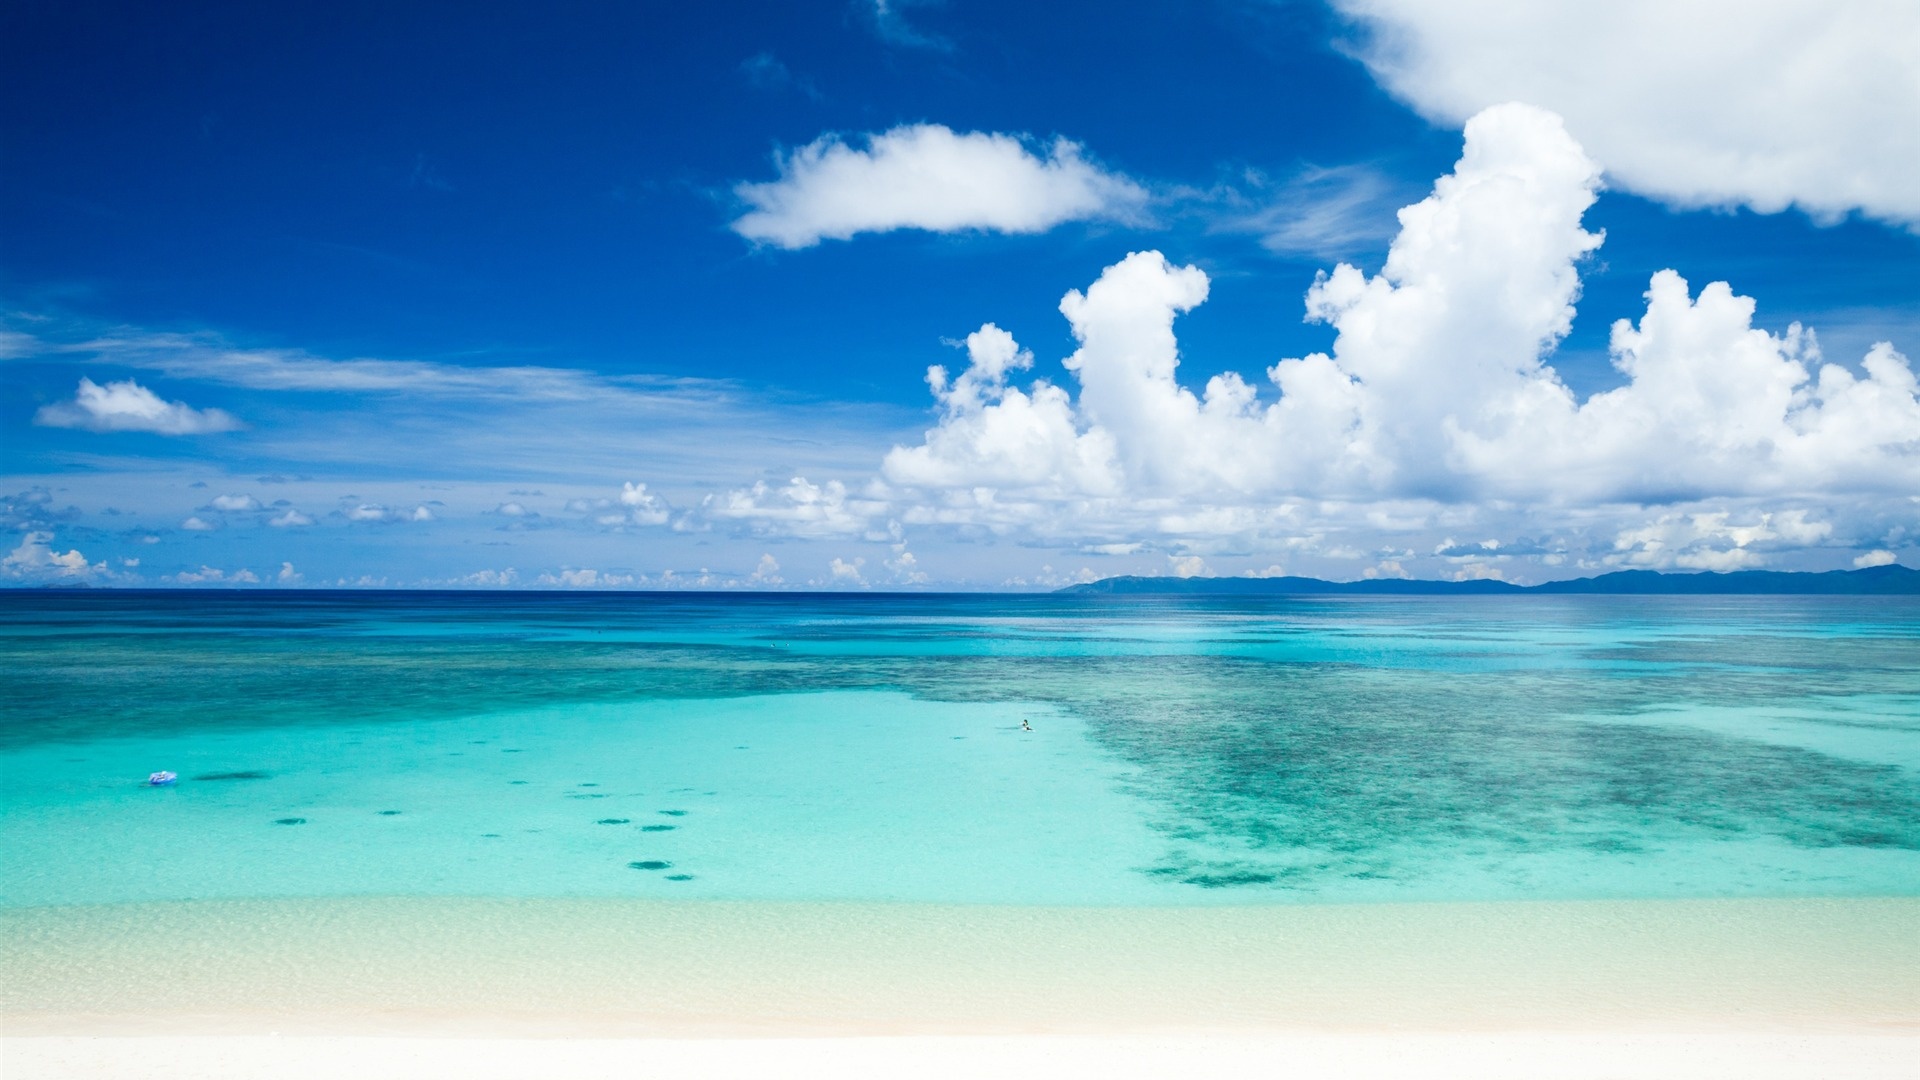 Tropical beach, Ocean landscape, Summer paradise, Linux wallpaper, 1920x1080 Full HD Desktop